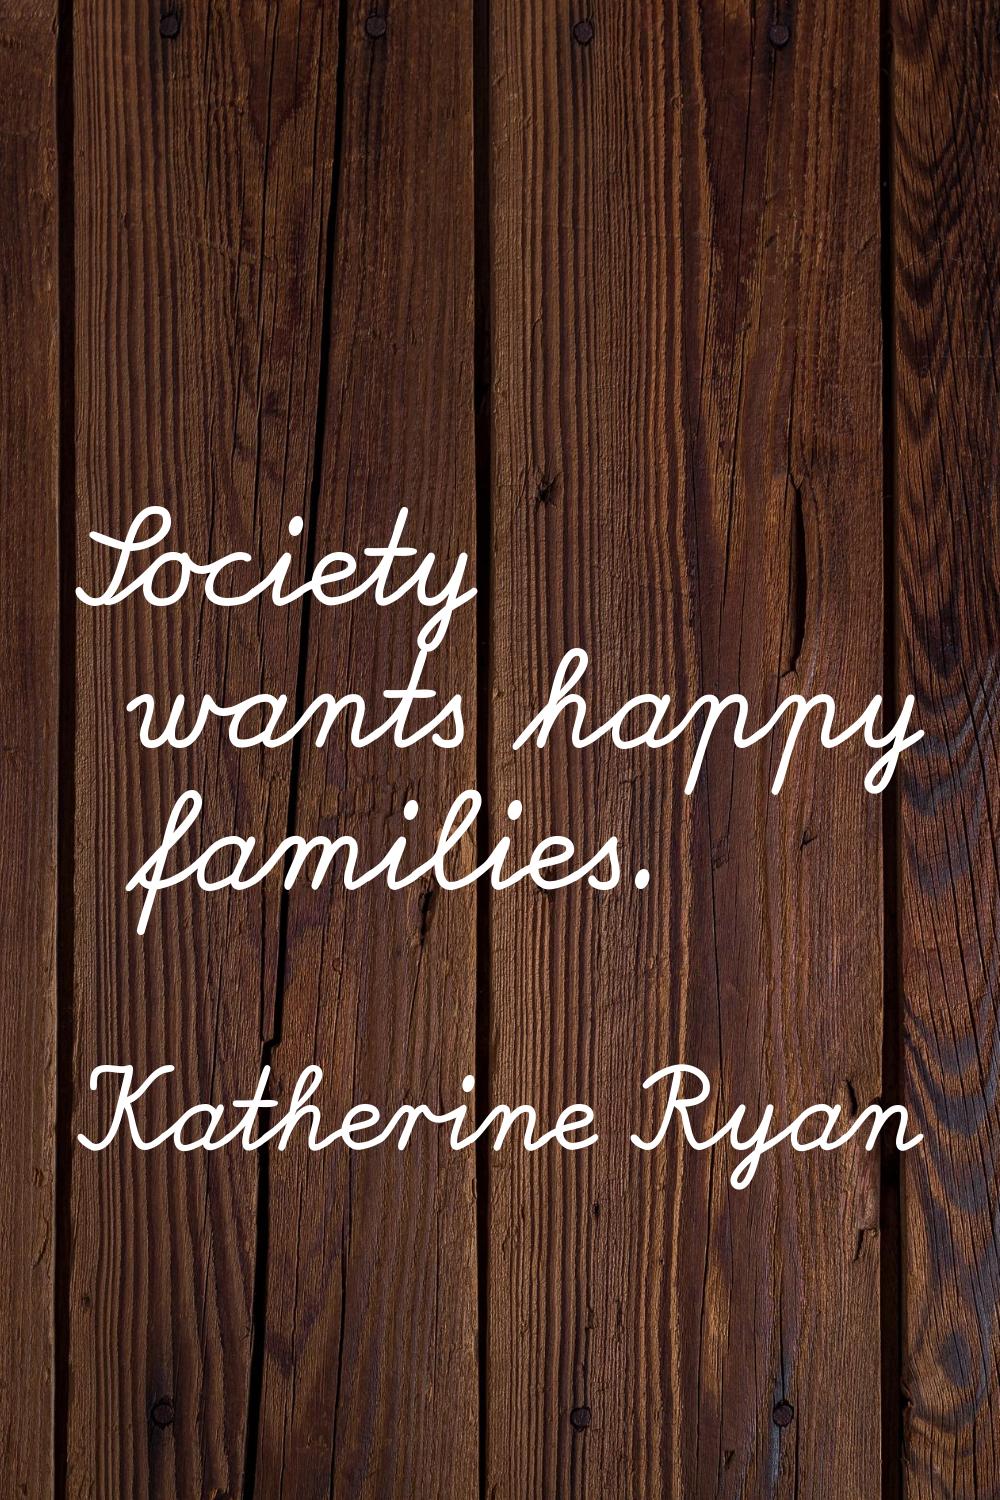 Society wants happy families.